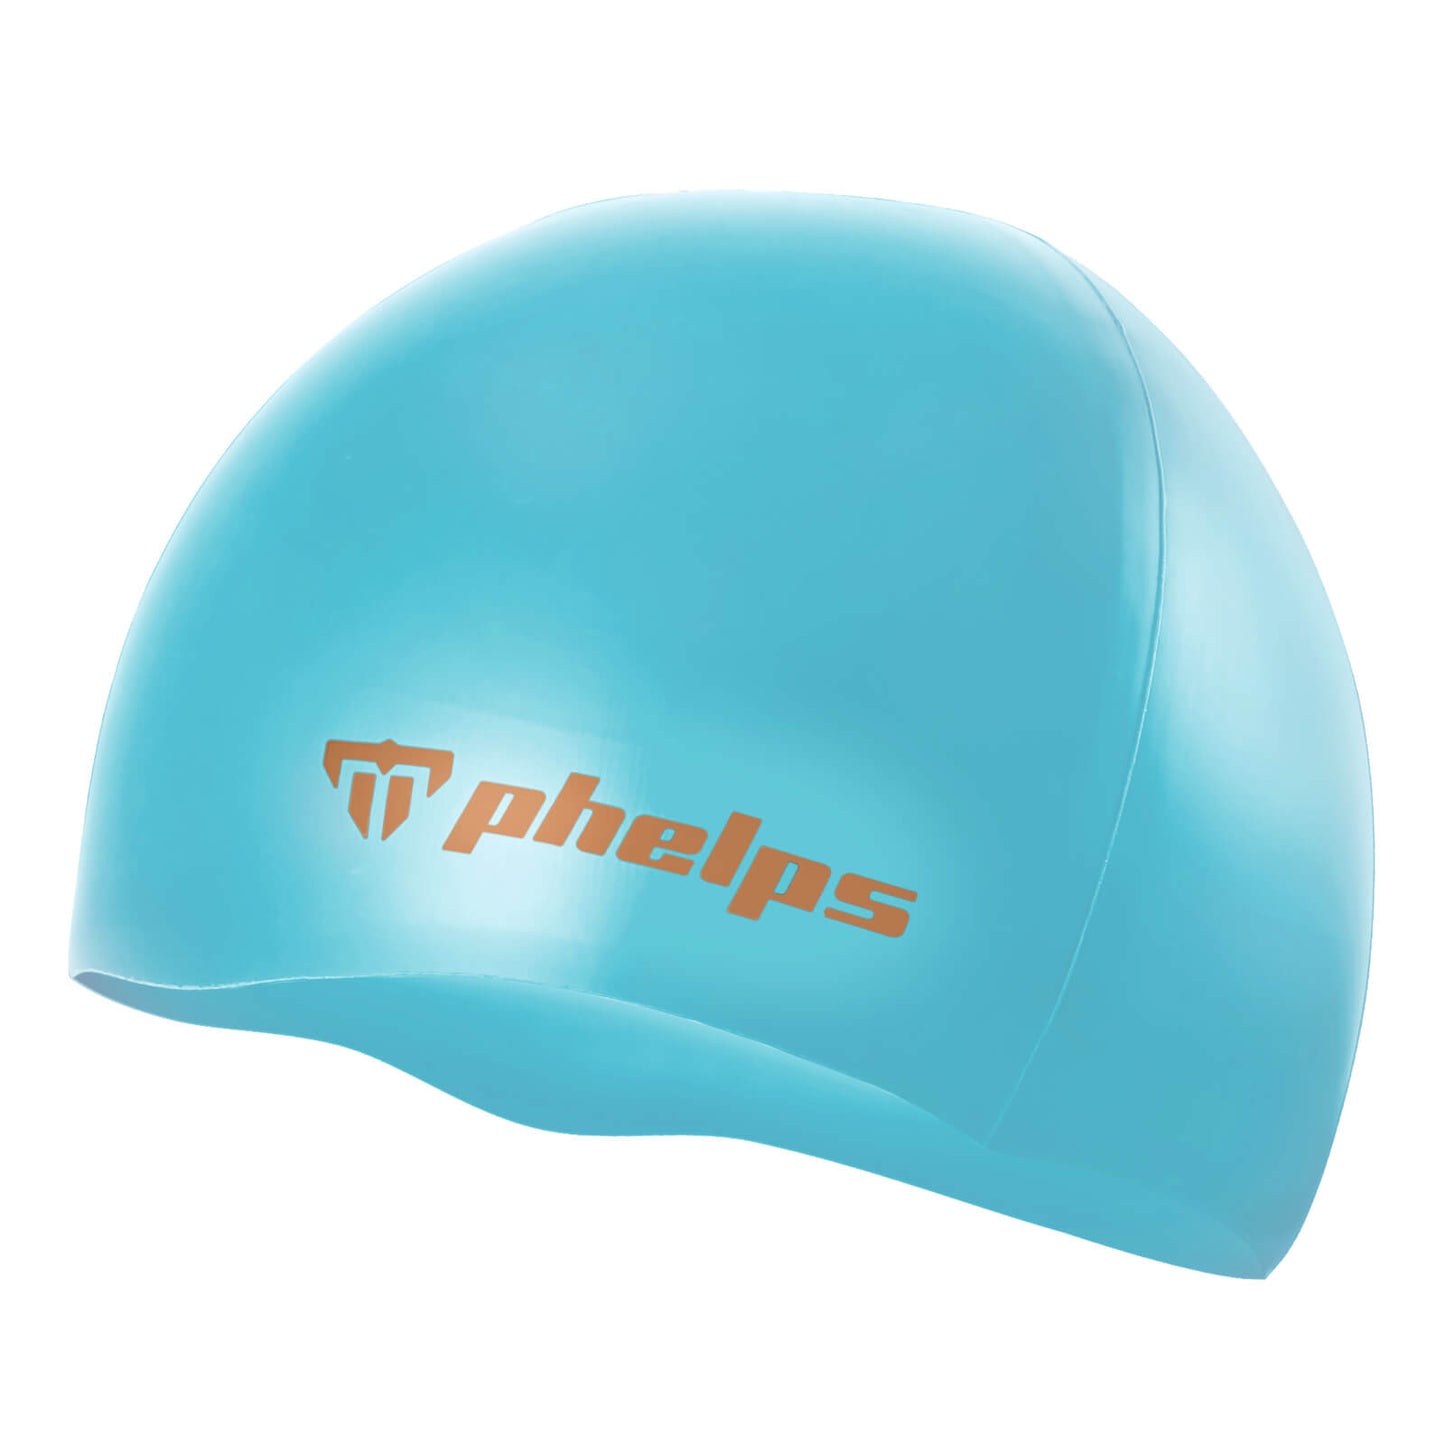 Phelps Classic Silicone Men's Swimming Cap Turquoise